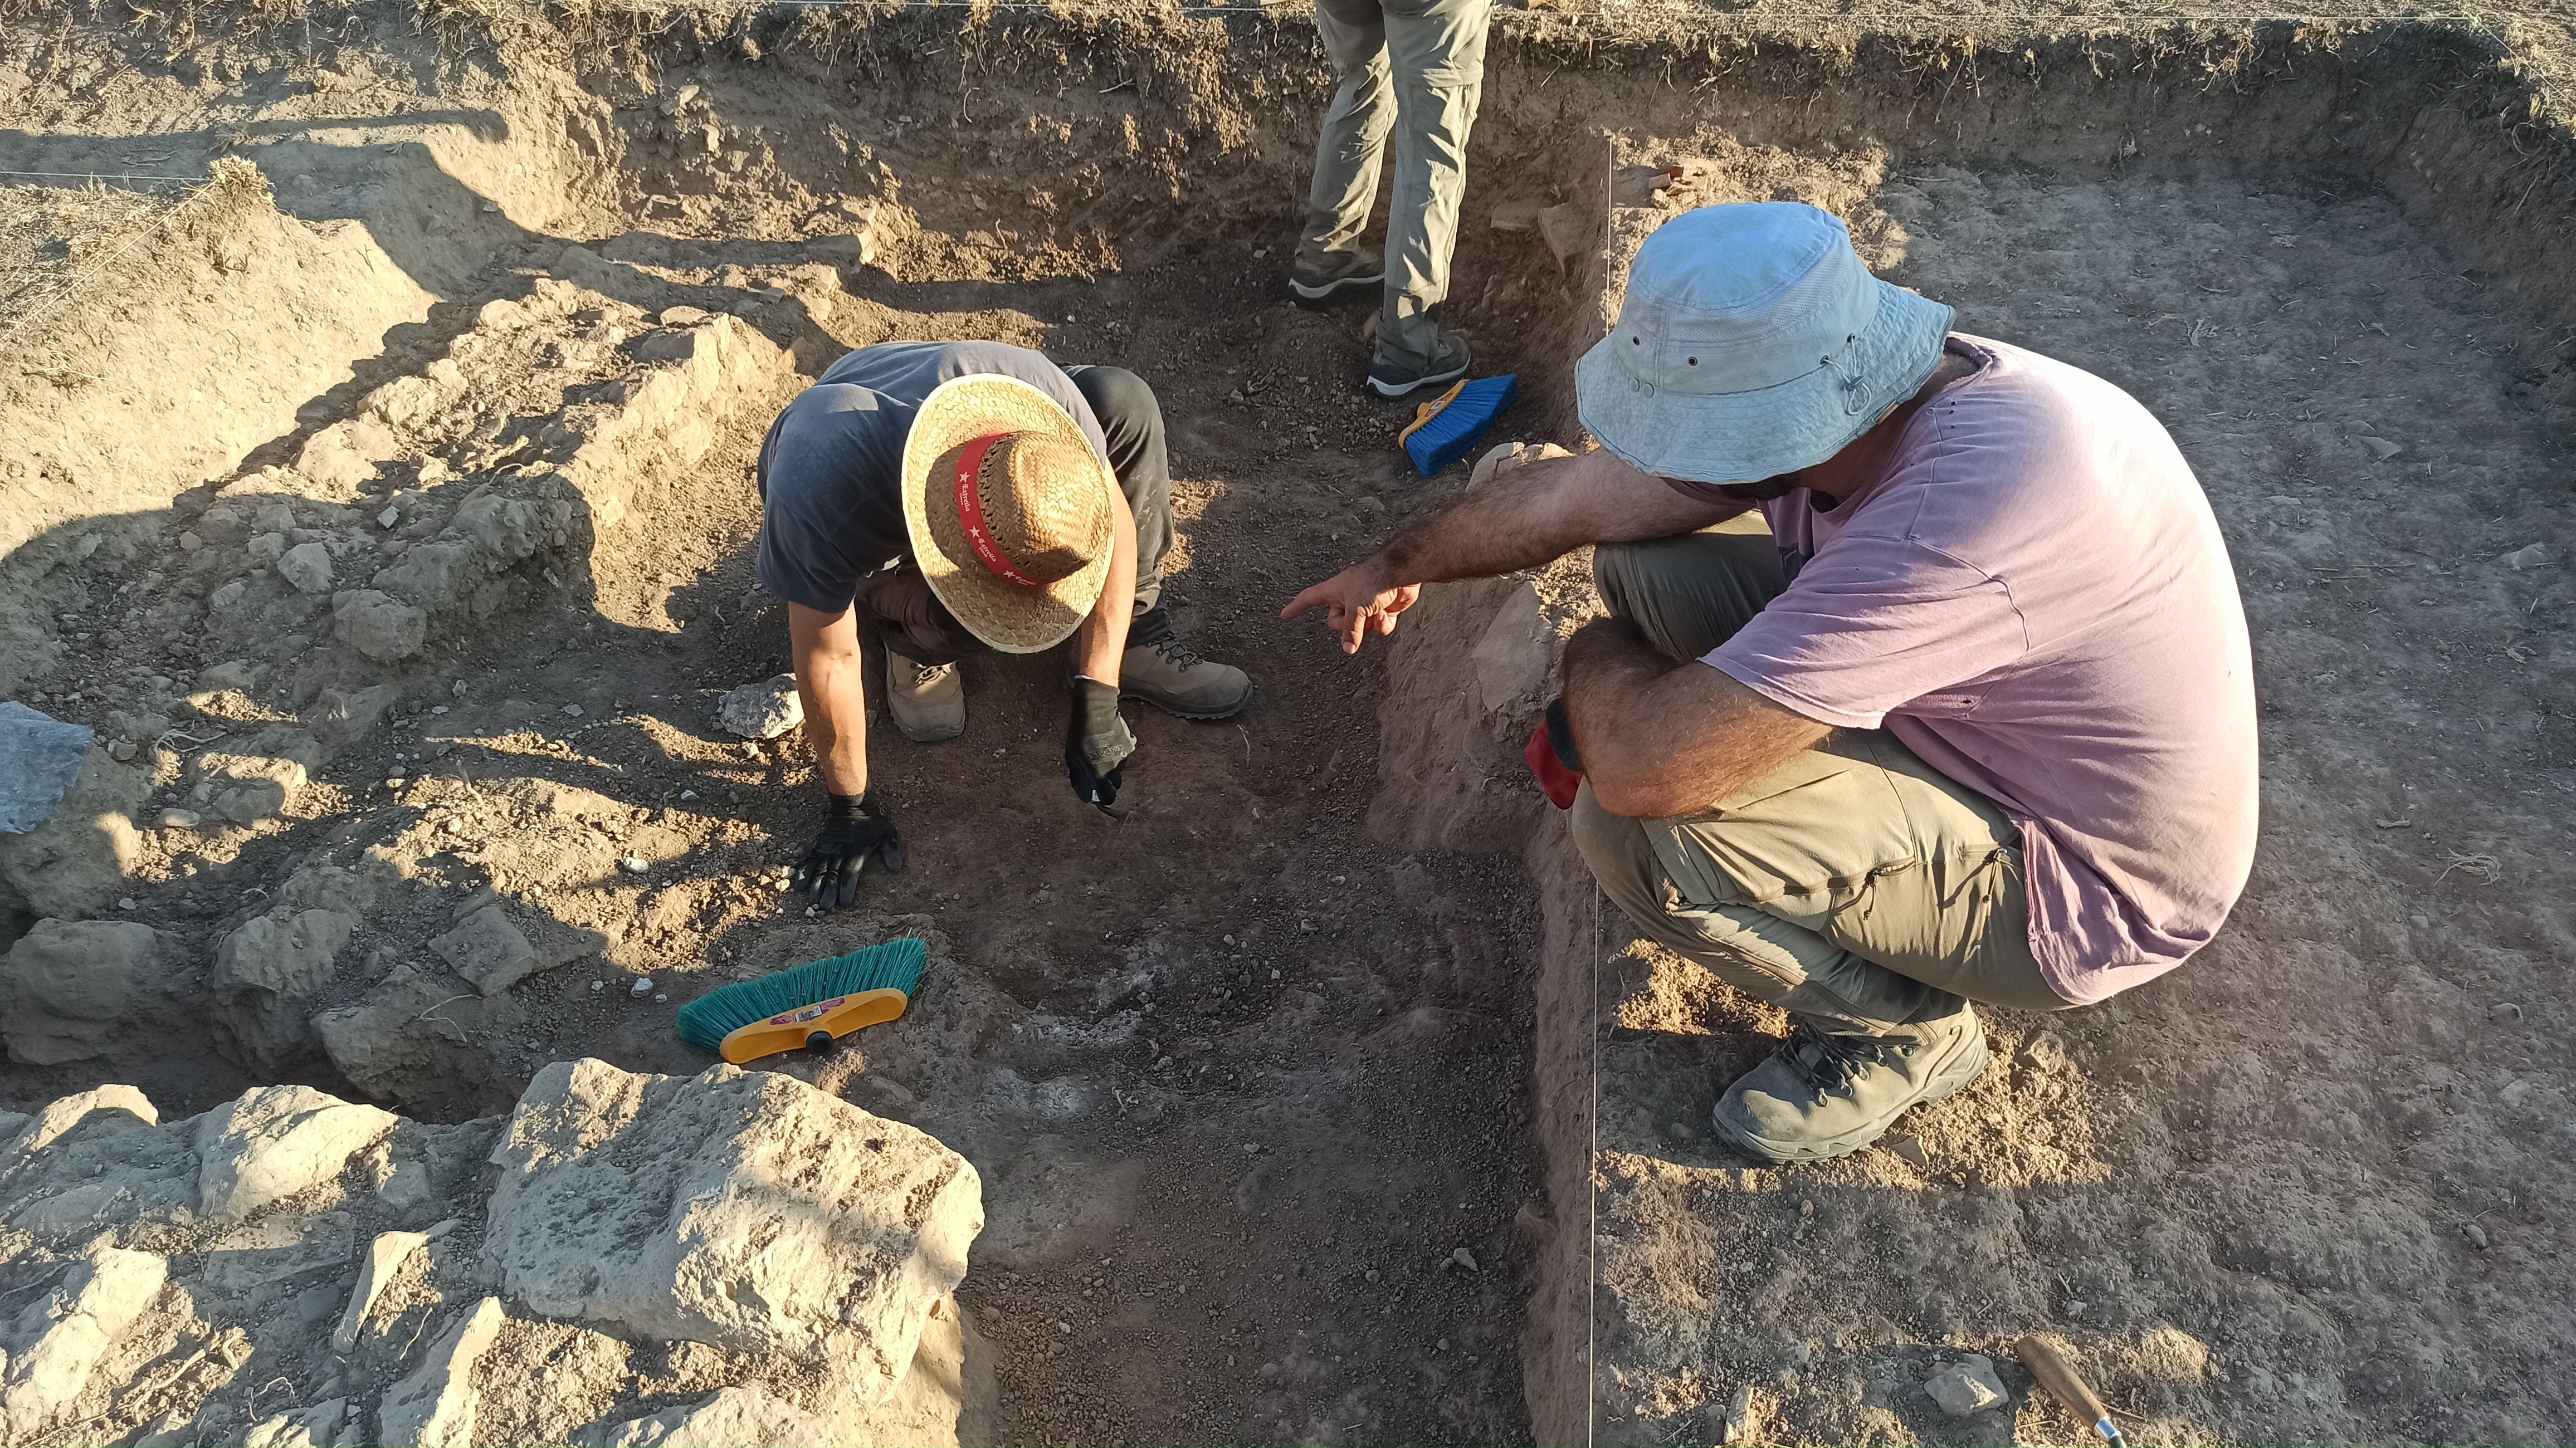 Arqueólogos de la Universidad de Salamanca descubren en la localidad burgalesa de Olmillos de Sasamón una iglesia visigoda inédita